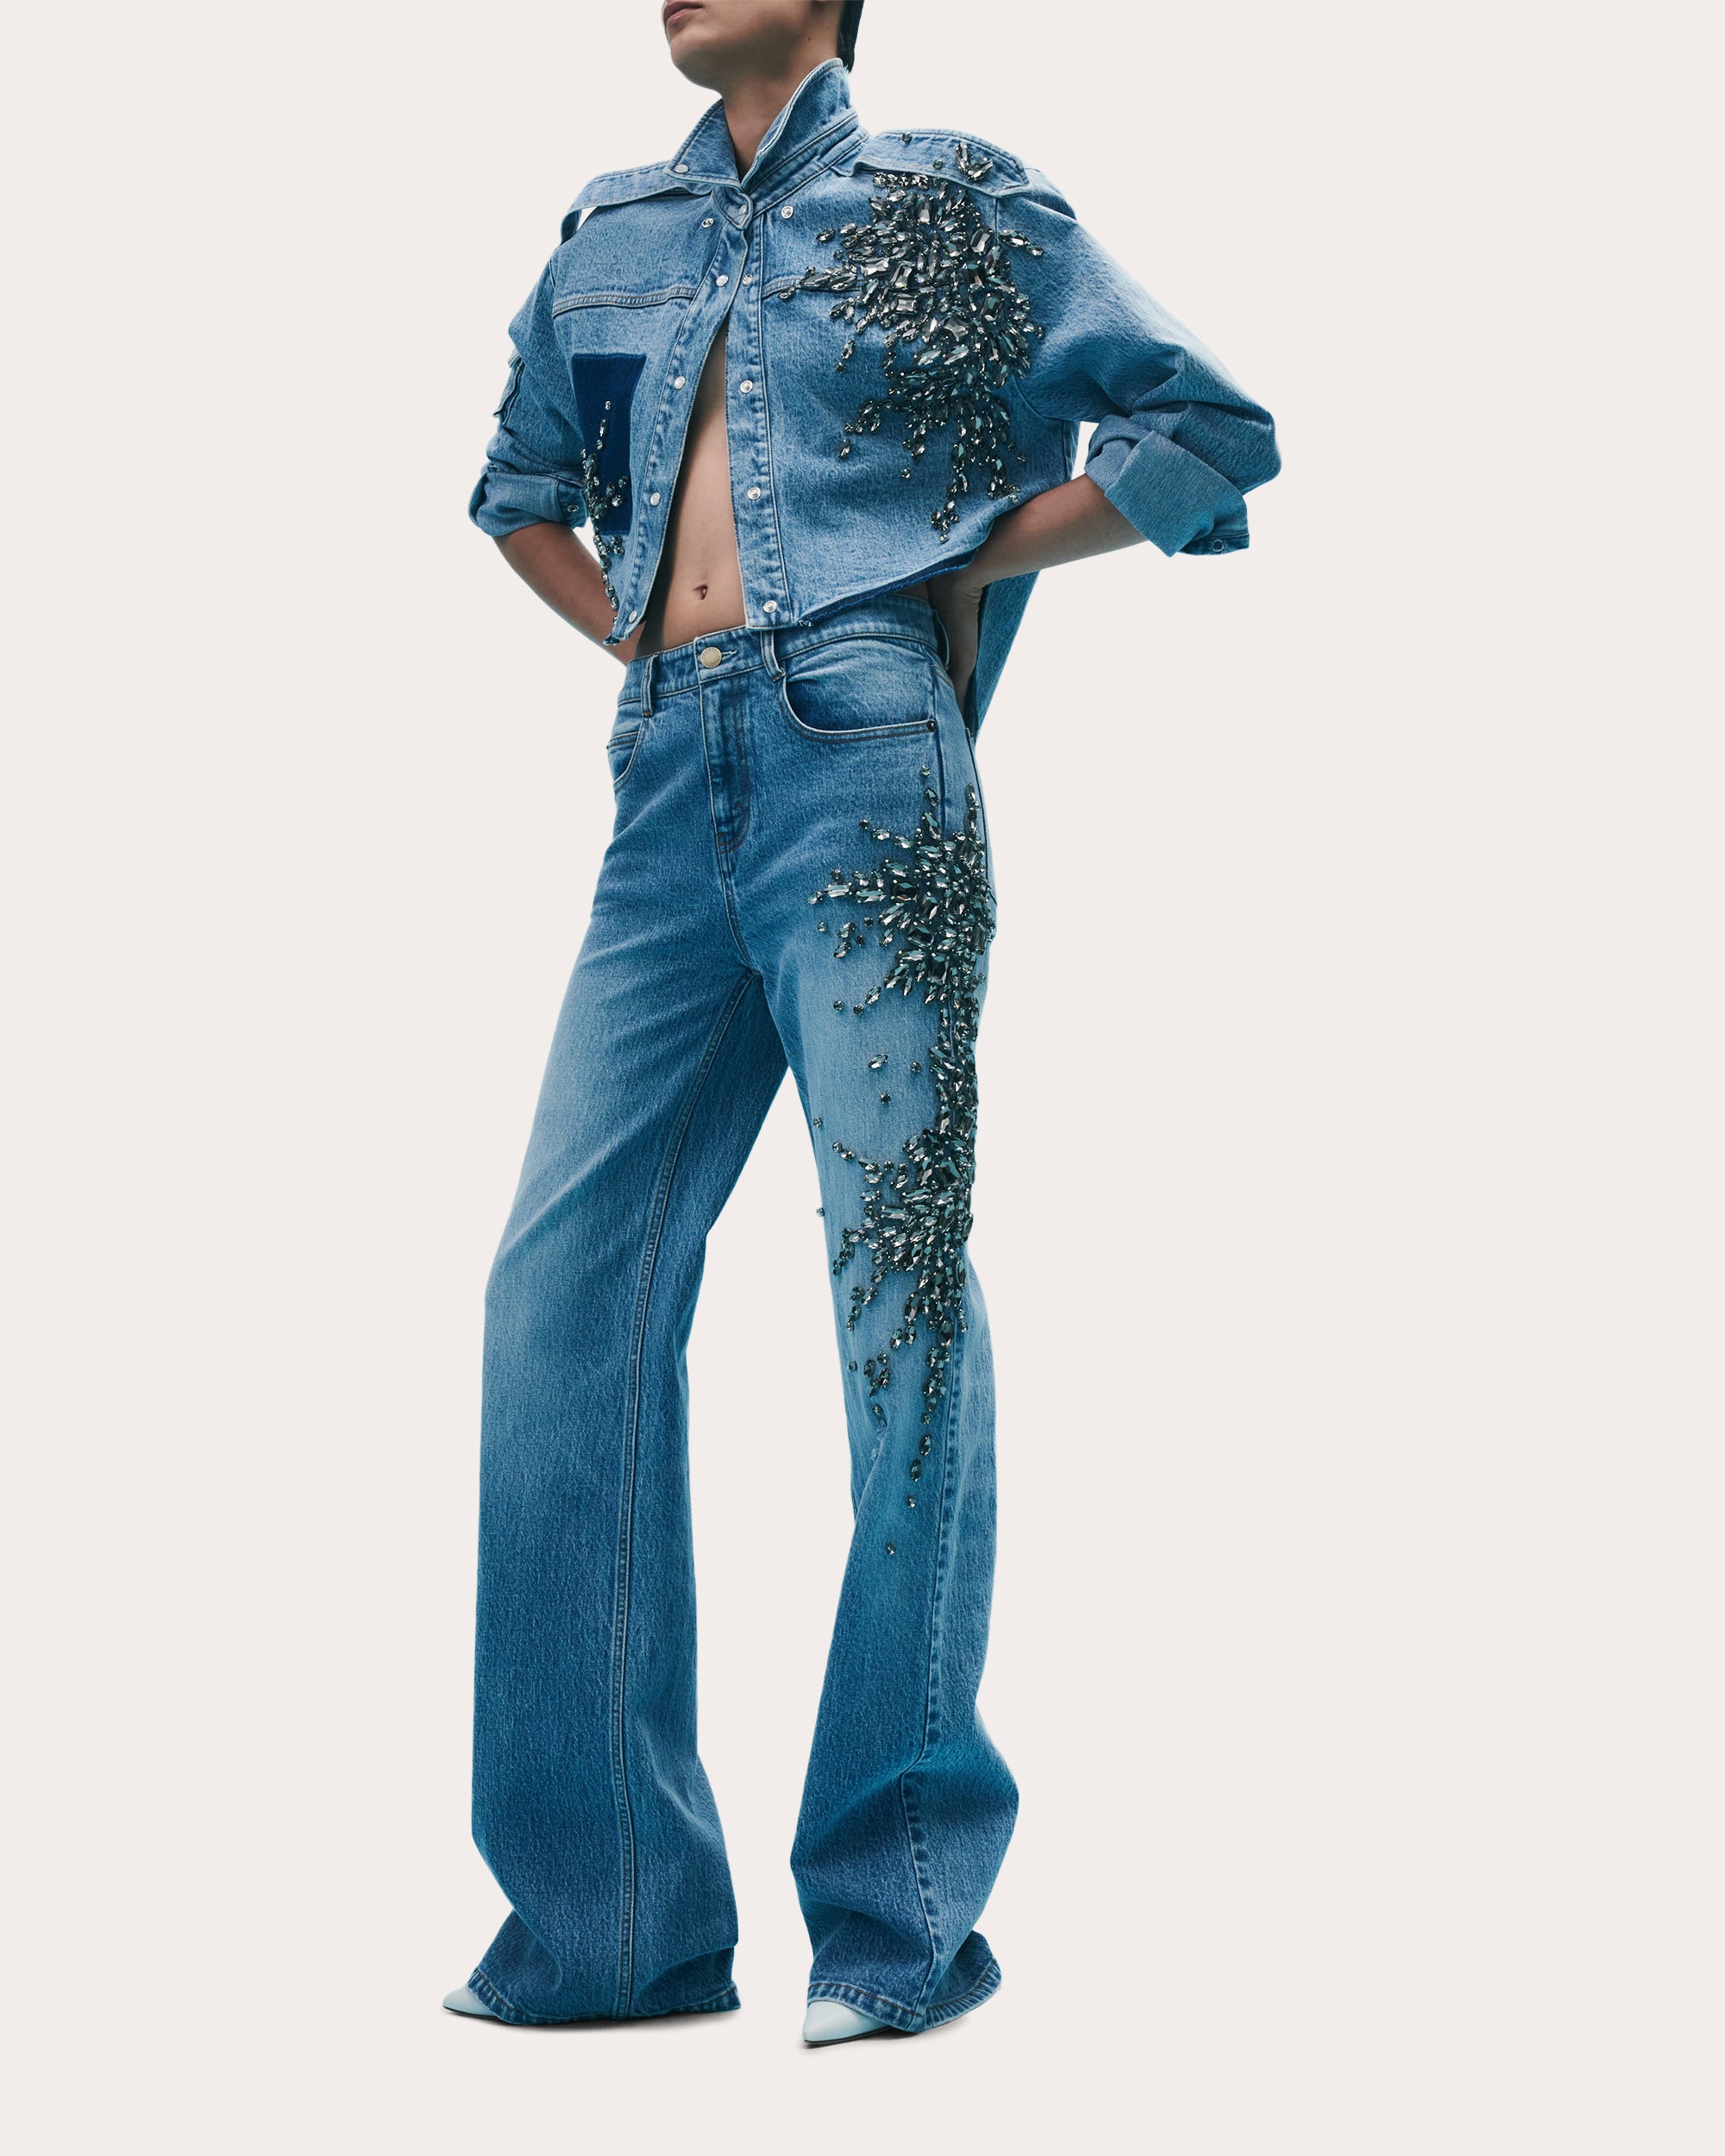 Martin Hellessy Jeans | OLIVELA Embellished